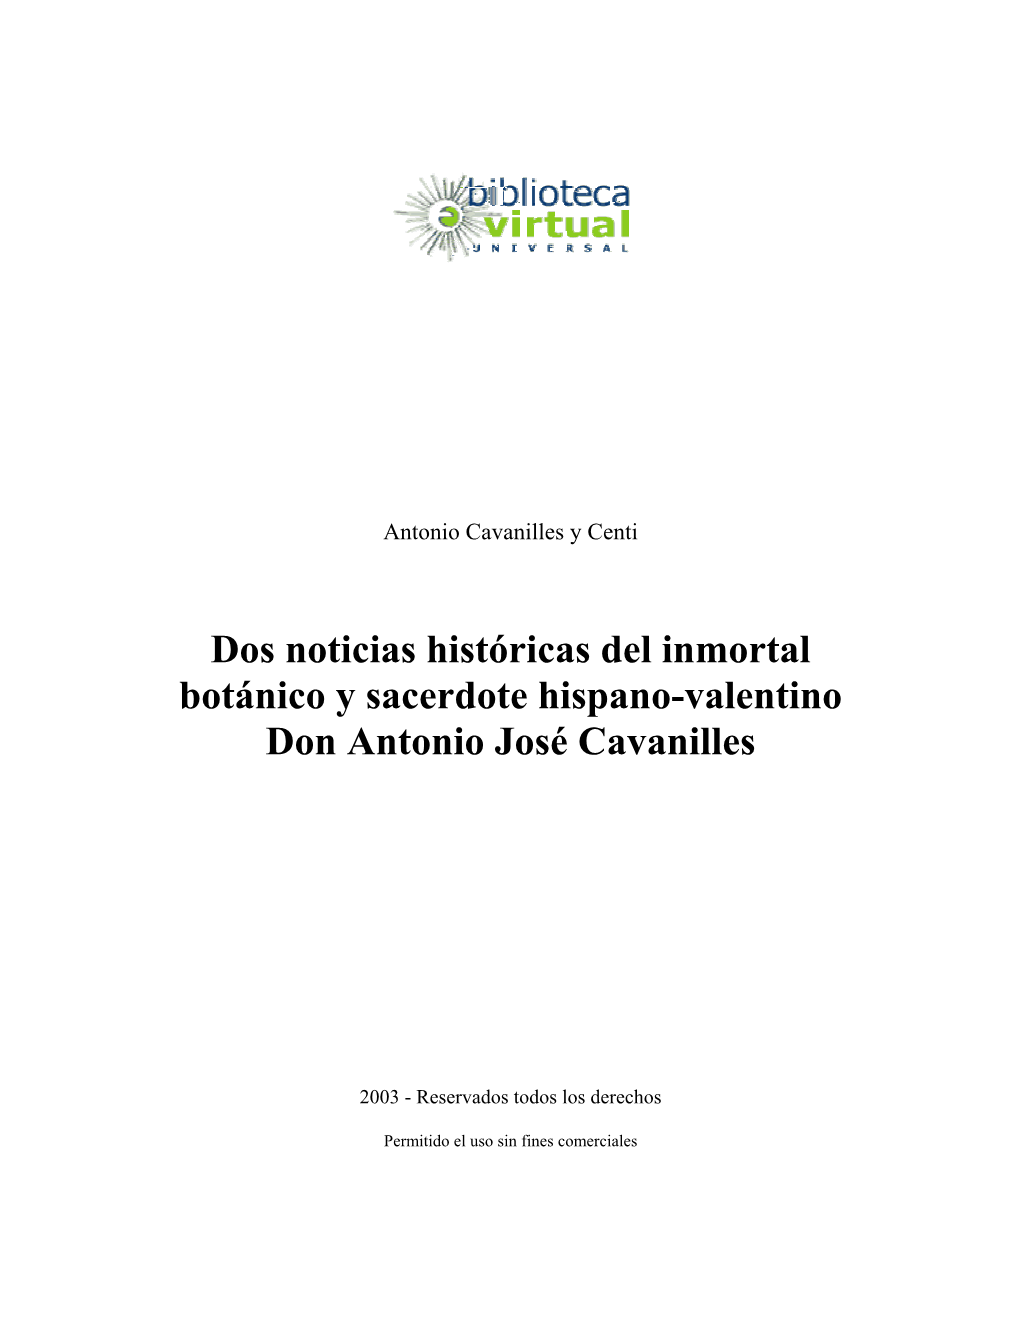 Dos Noticias Históricas Del Inmortal Botánico Y Sacerdote Hispano-Valentino Don Antonio José Cavanilles